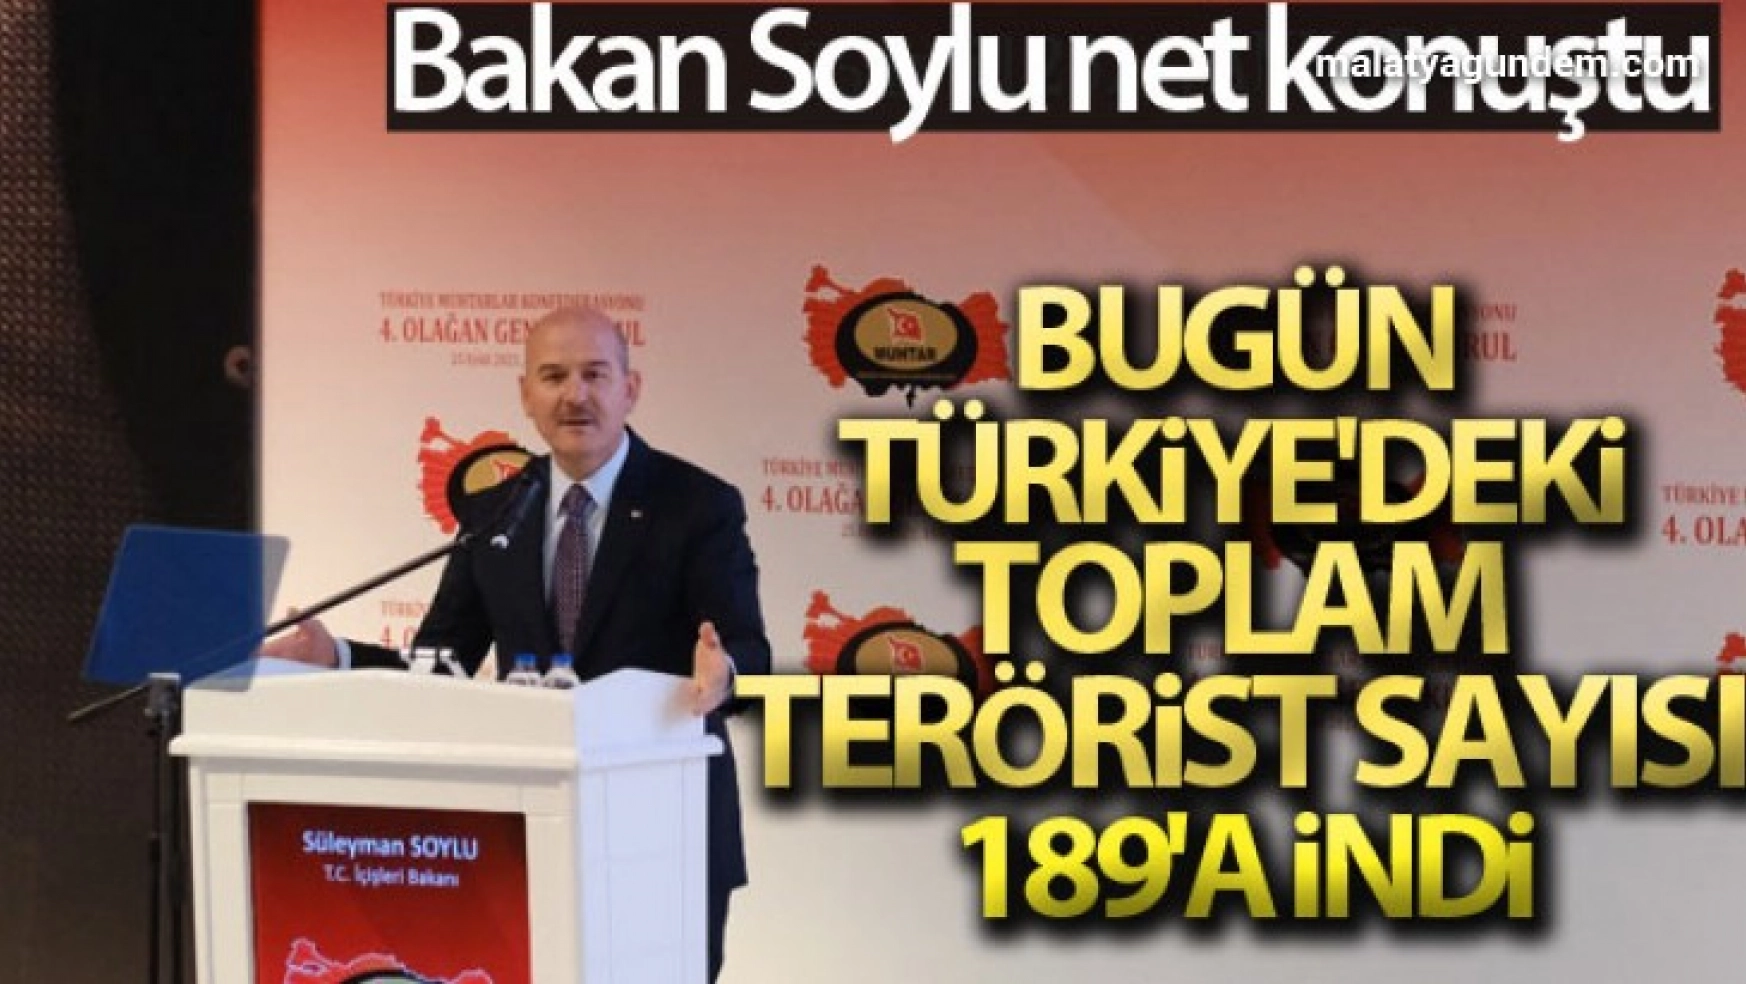 Bakan Soylu: 'Bugün Türkiye'deki toplam terörist sayısı 189'a indi'